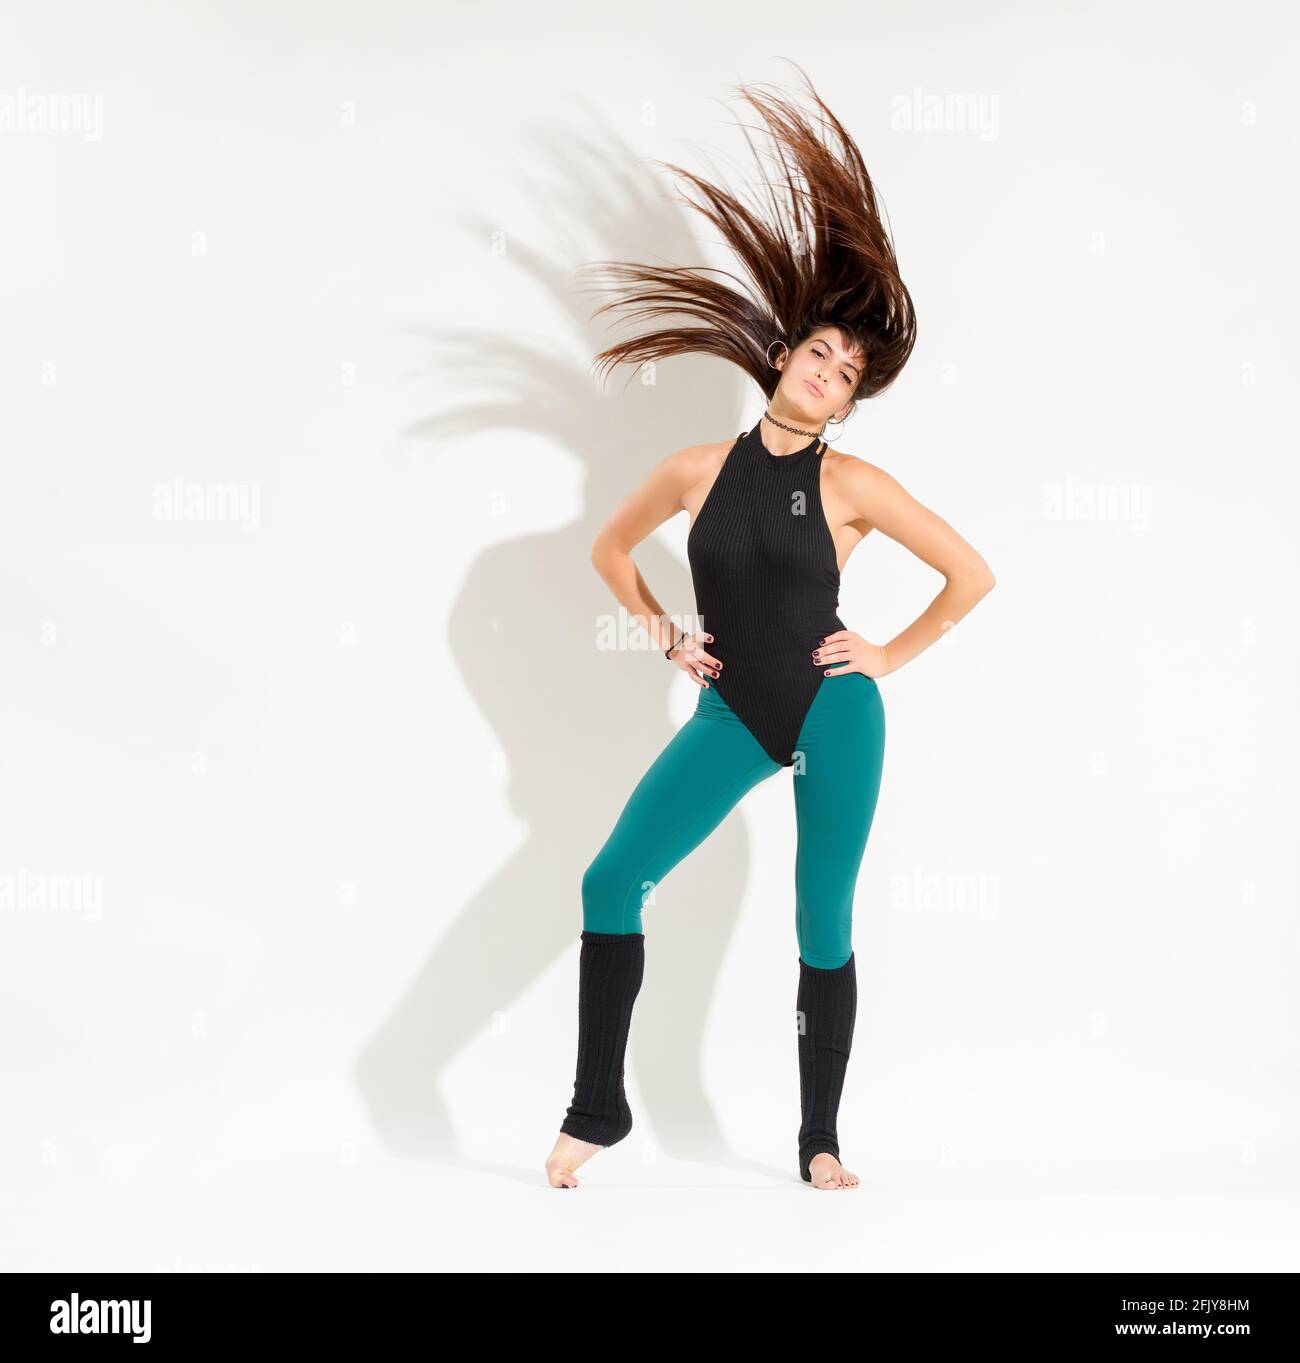 Formschöne junge Tänzerin in einem 80er-Jahre-Outfit, die einen Klassiker aufführt Retro-Tanzpose mit Händen auf Hüften, die sie lang werfen Haare hoch in die Luft isoliert auf w Stockfoto